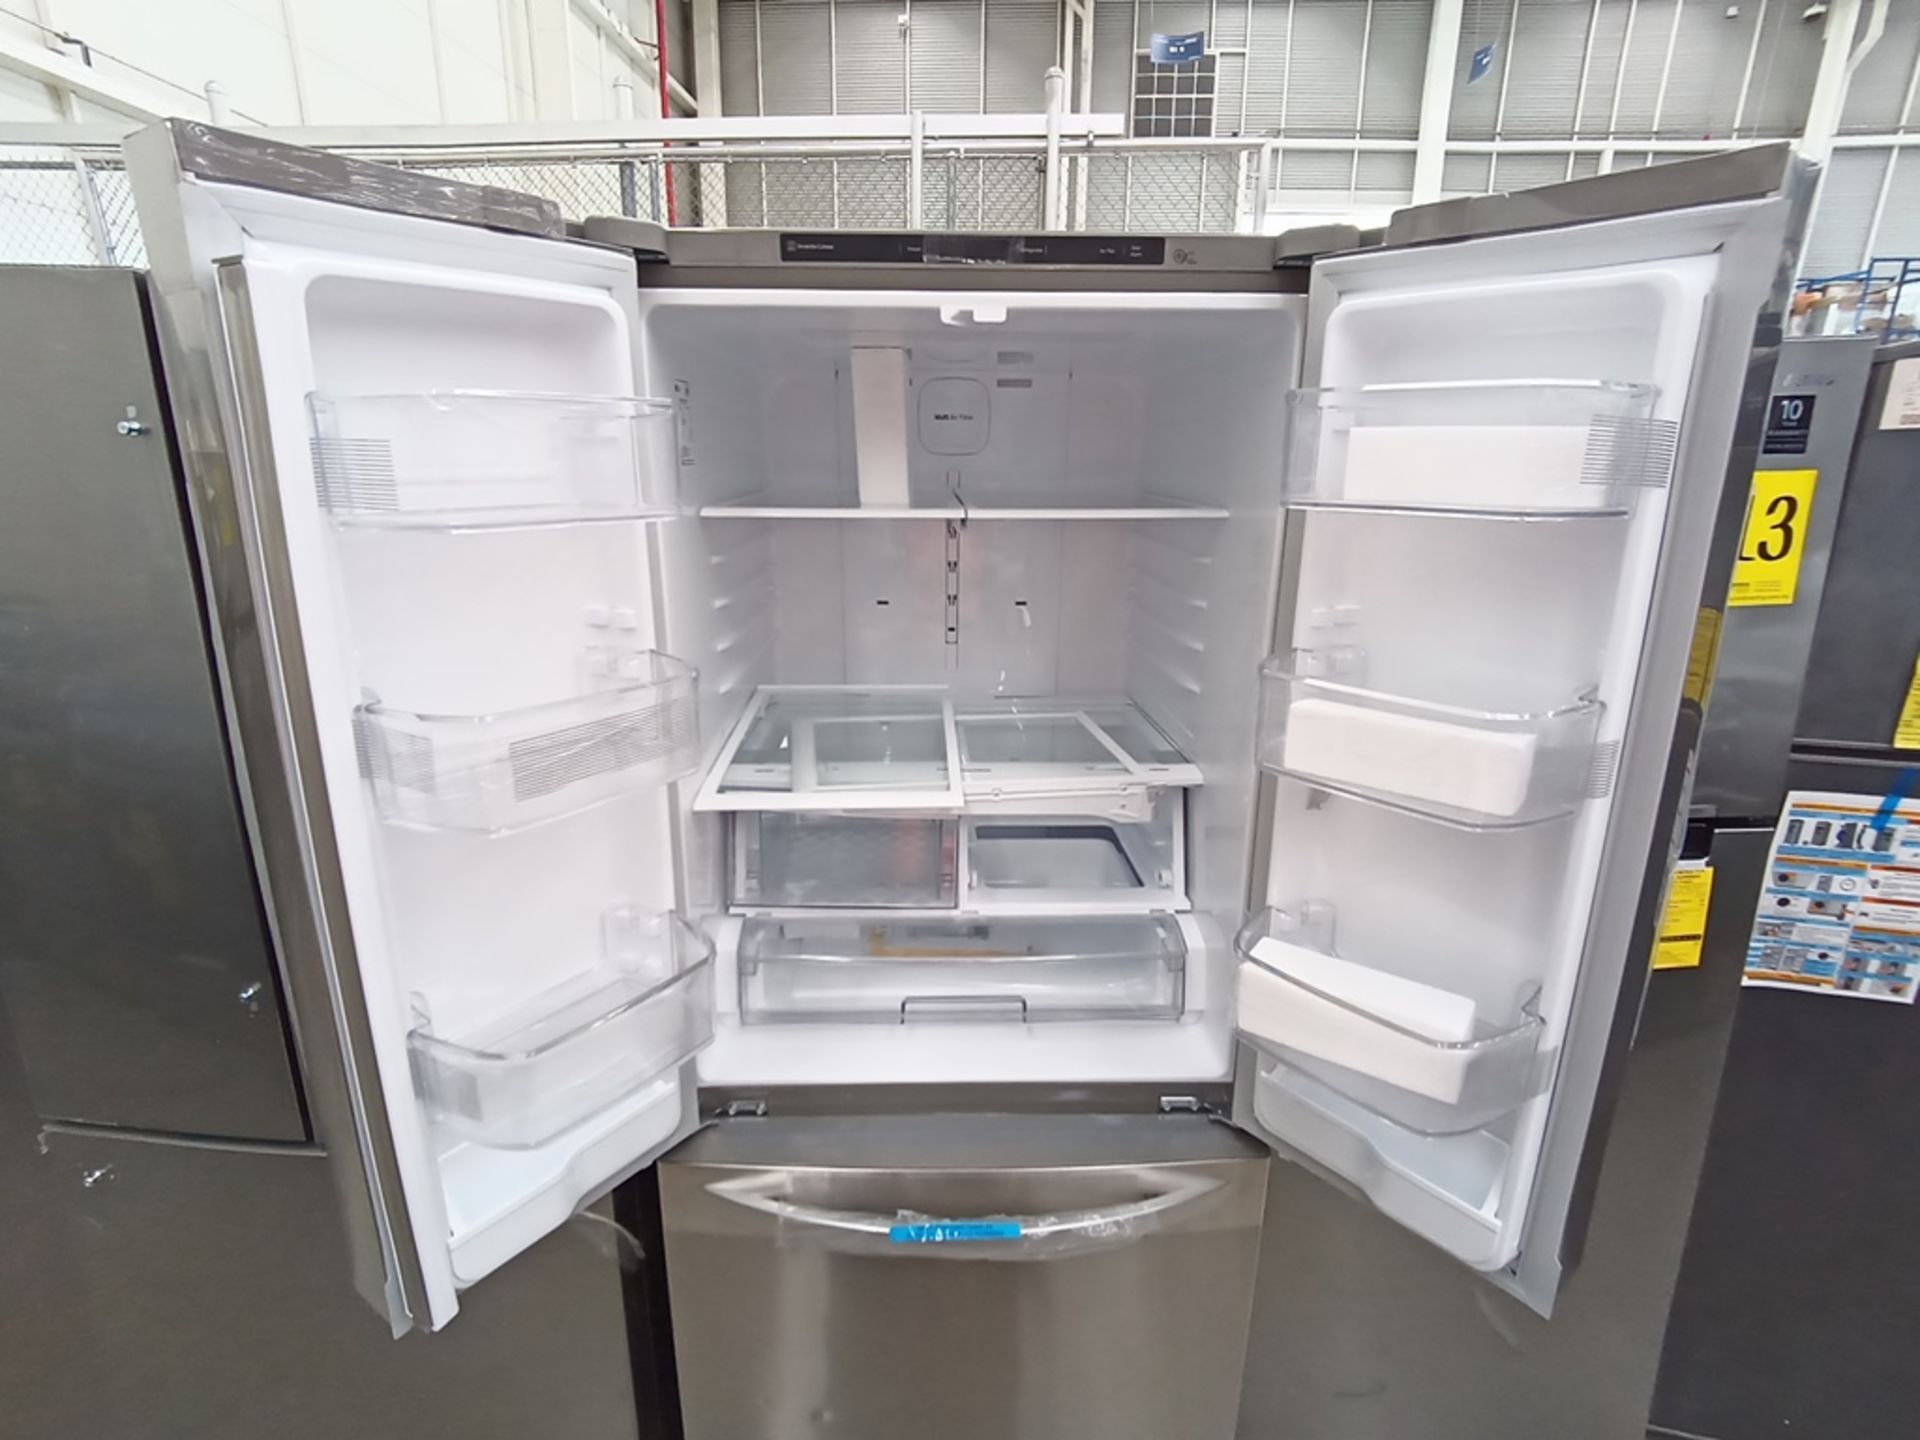 Lote de 2 refrigeradores contiene: 1 Refrigerador Marca LG, Modelo GF22BGSK, Serie 107MRMD4S595, Co - Image 9 of 16